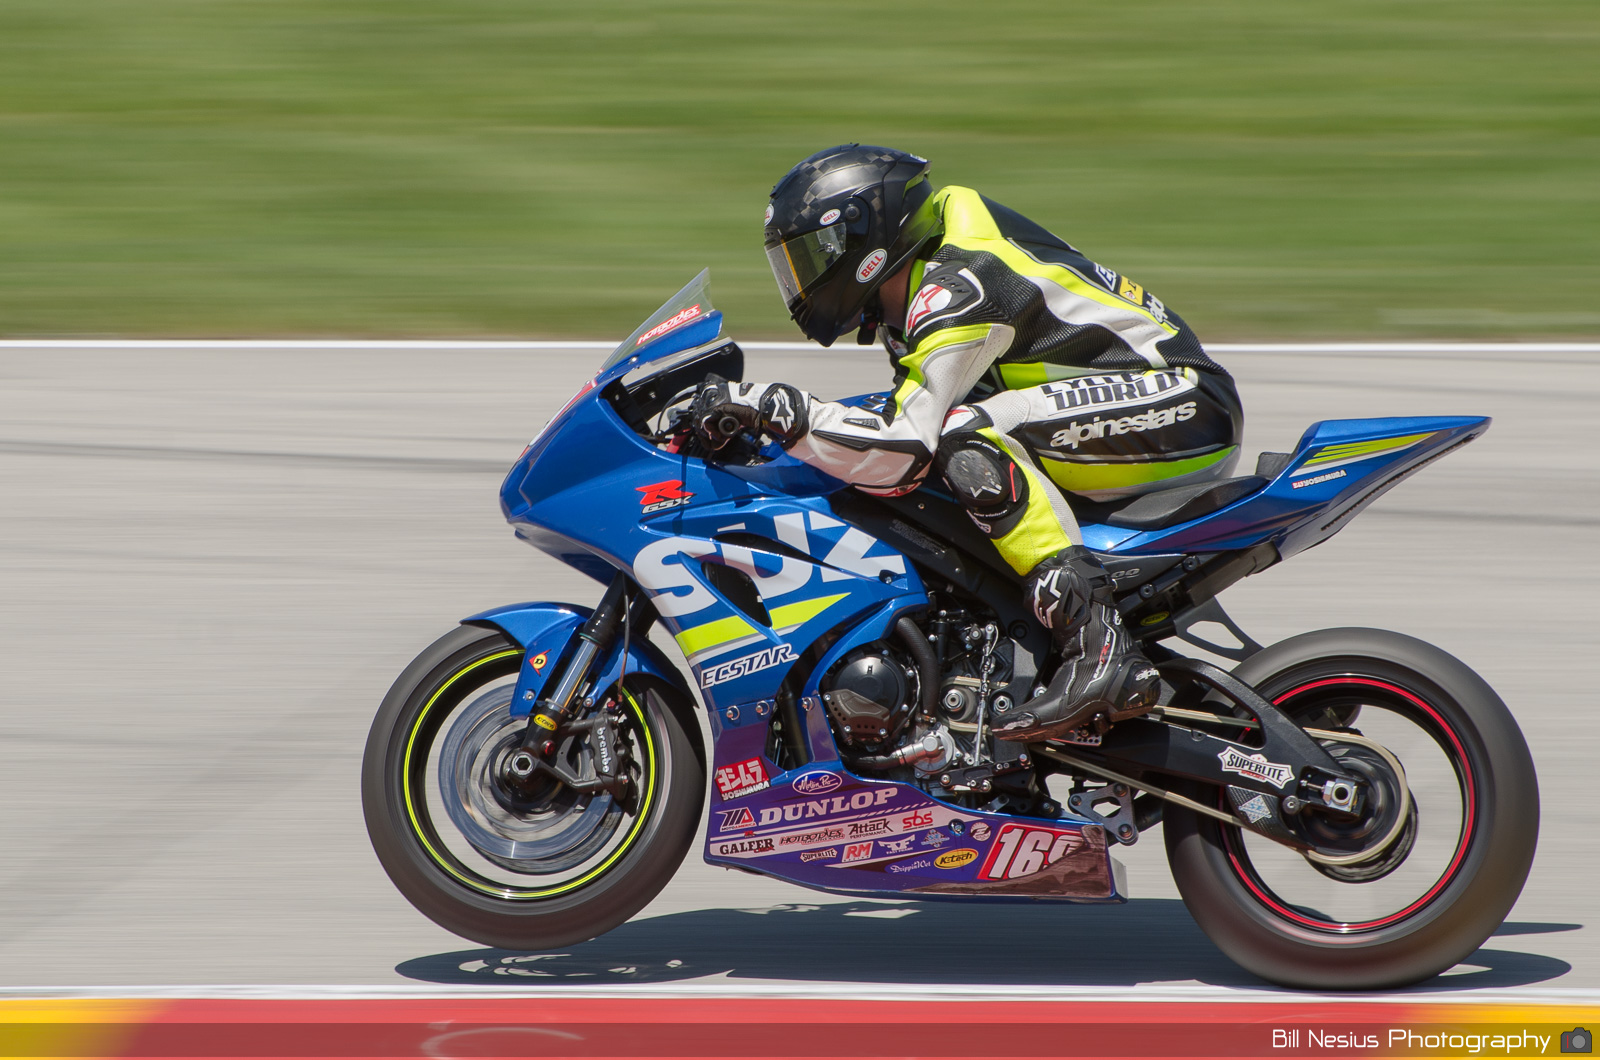 Hayden Gillim on the #169 Suzuki Cycle World/Suzuki / DSC_1551 / 4